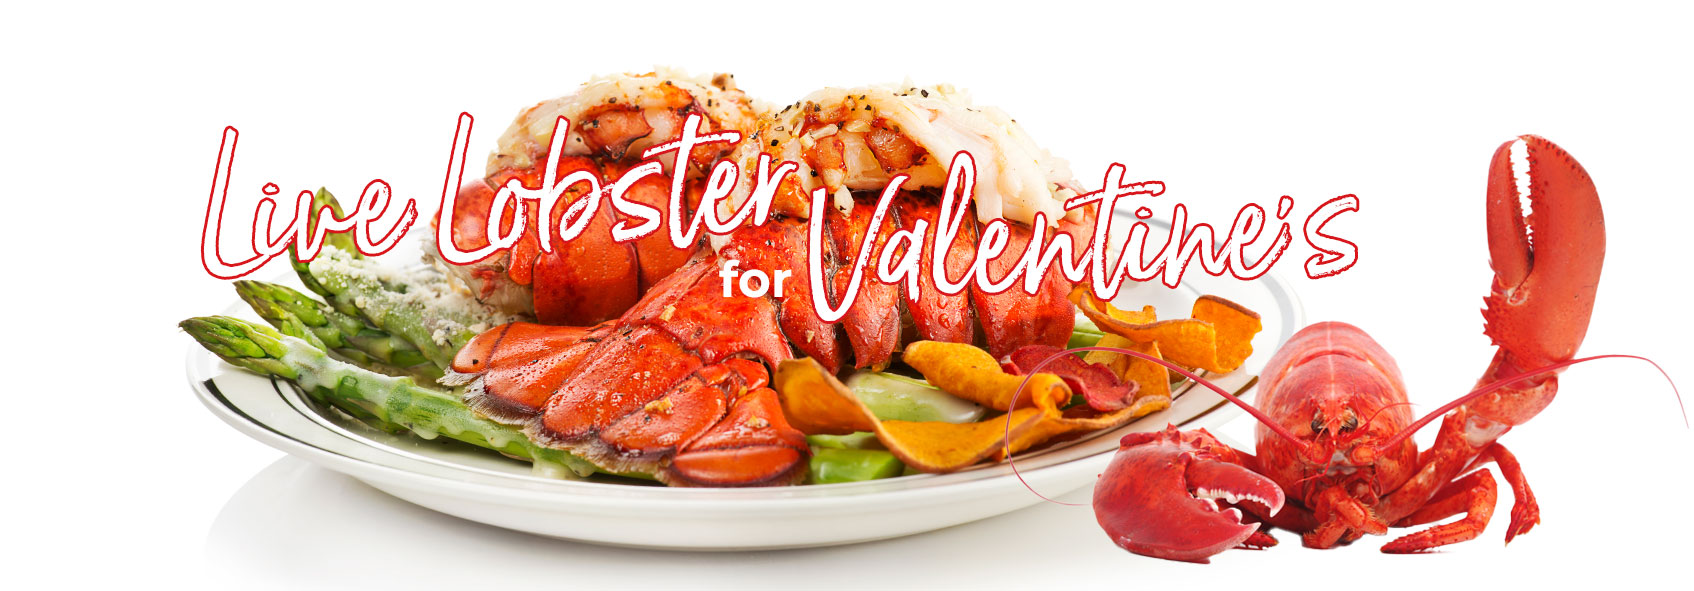 trigs-homepg-banner-valentines-live-lobster.jpg